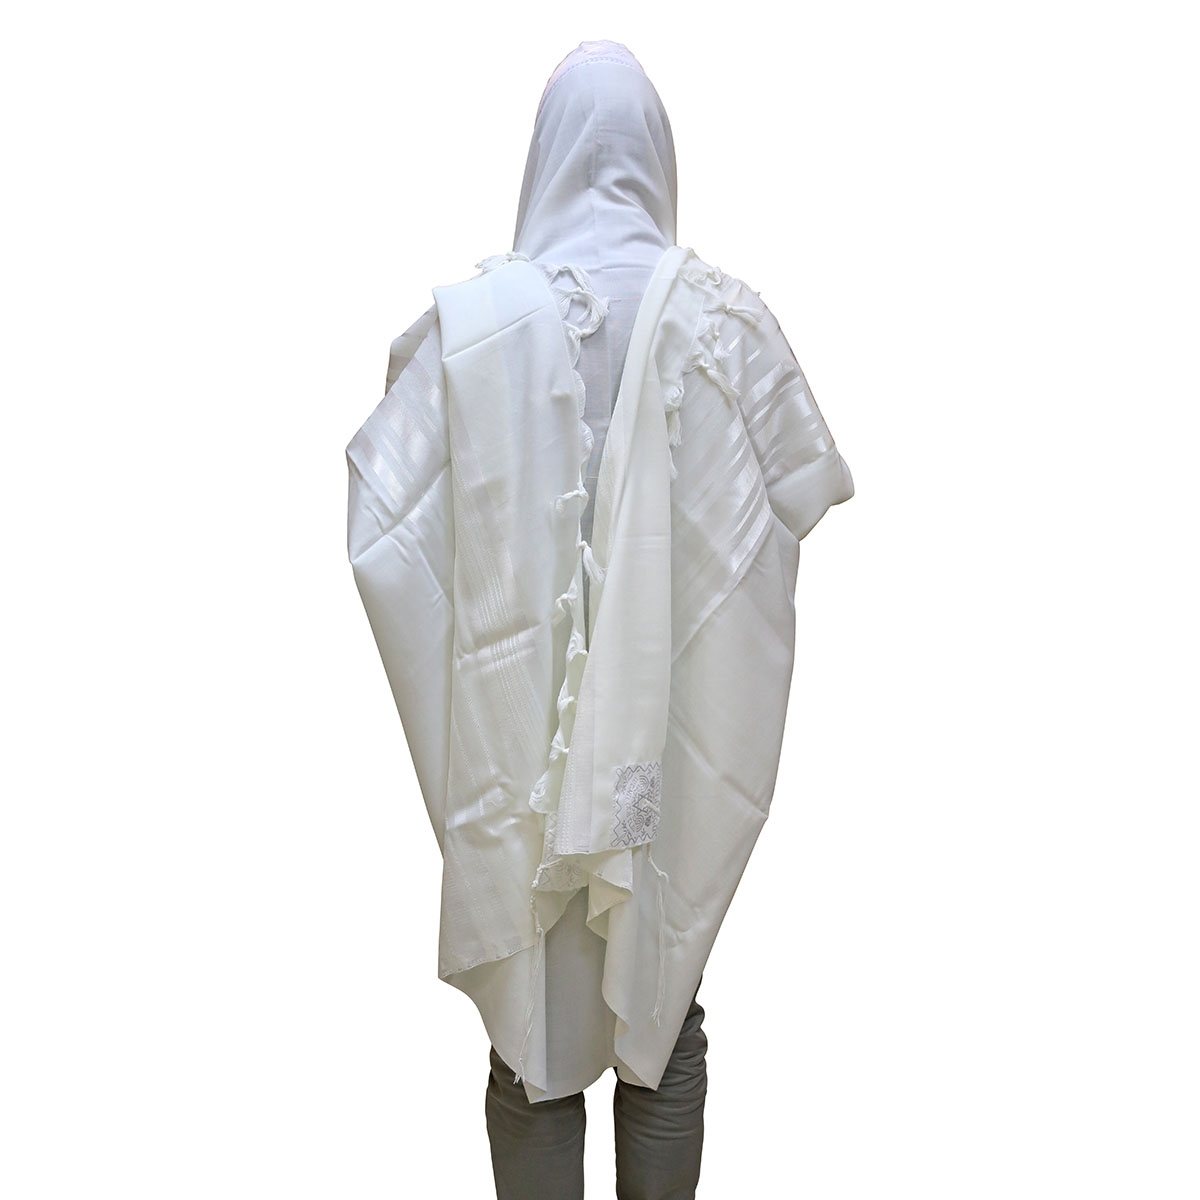 Wool Prima Tallit (Prayer Shawl) – White - 2